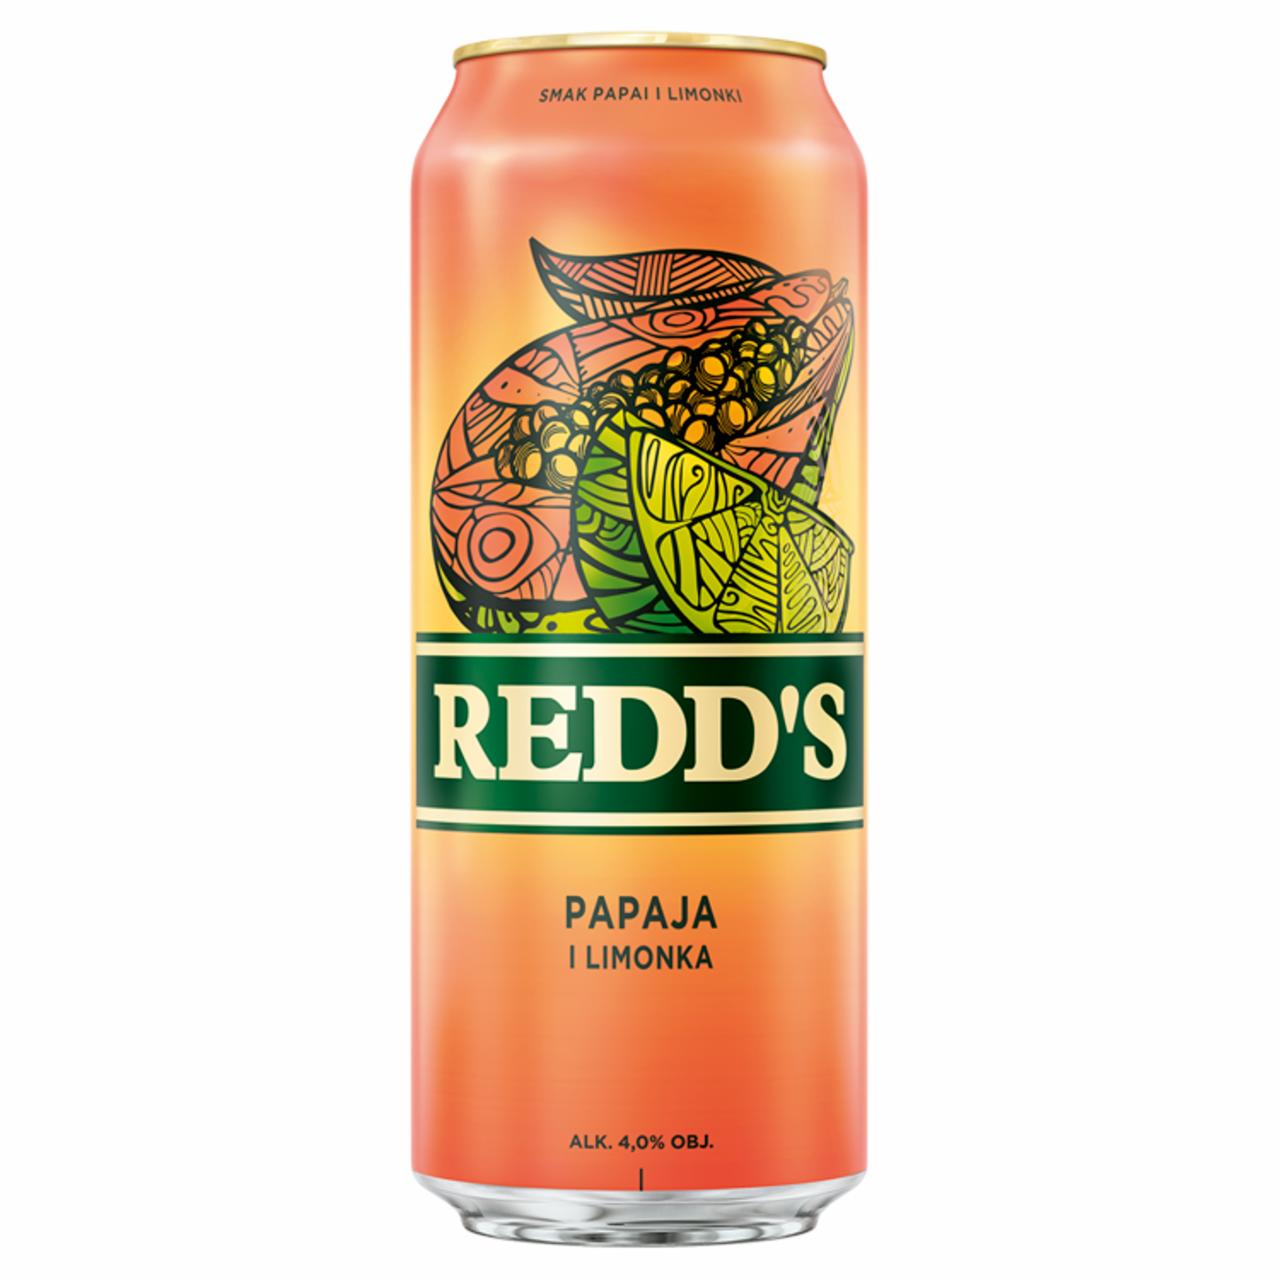 Zdjęcia - Redd's Piwo smak papaja i limonka 500 ml